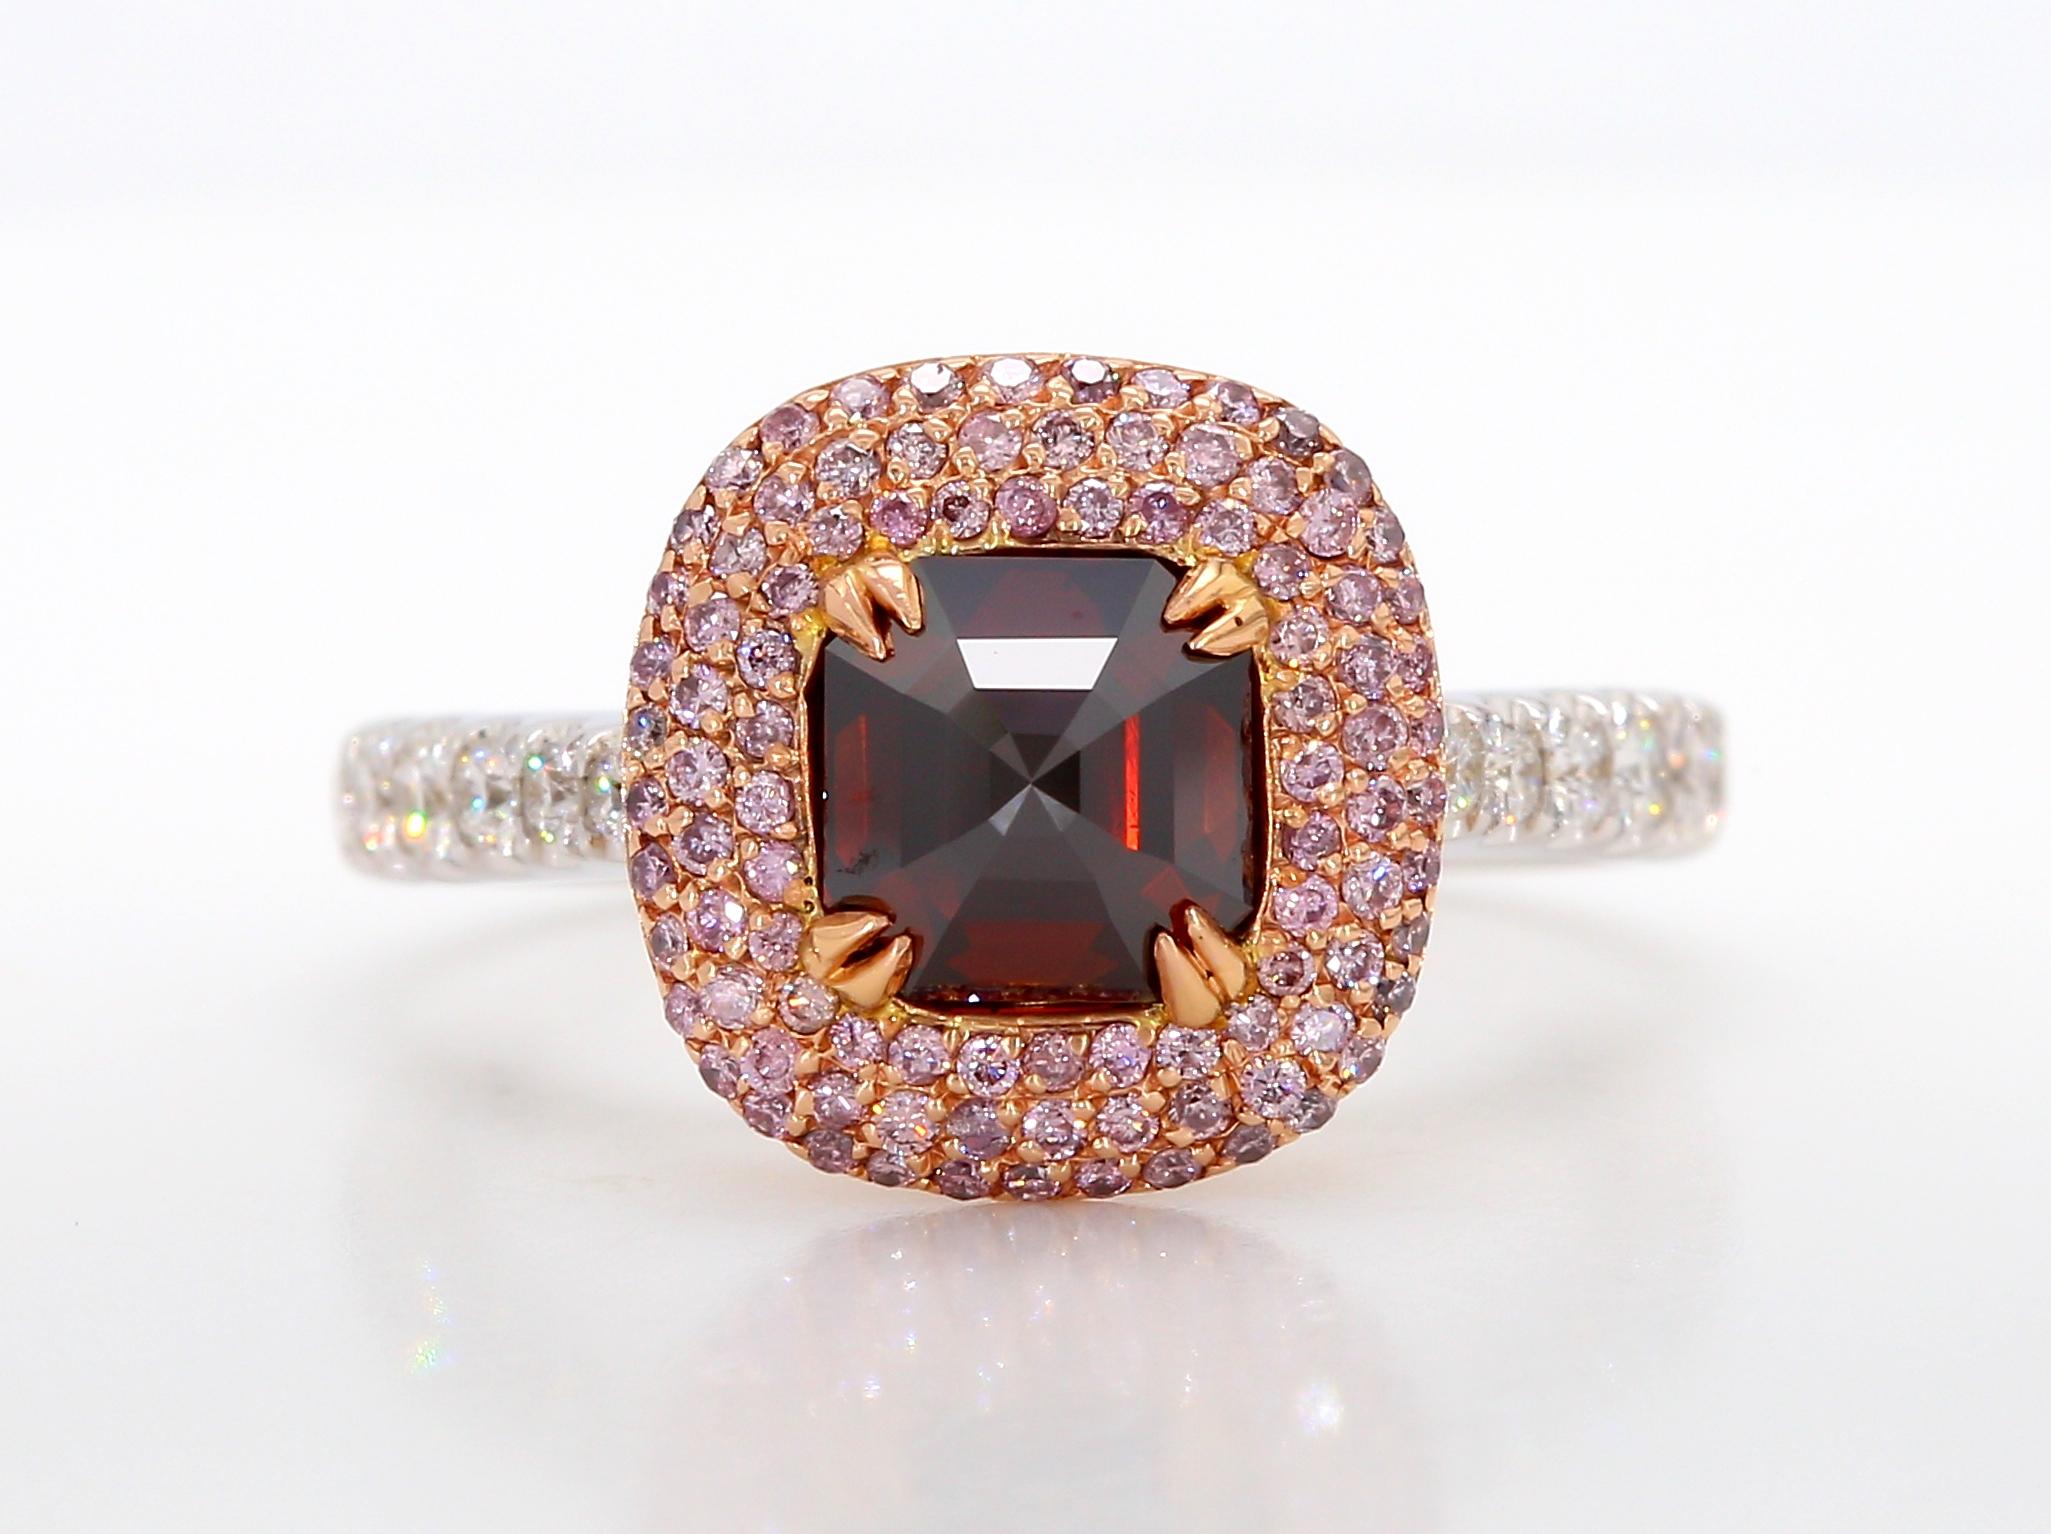 Ein außergewöhnlicher Verlobungsring mit einem einzigartigen, GIA-zertifizierten, 1+ Karat schweren Fancy Red-Brown Emerald-Diamanten mit der Reinheit I1. Er ist wunderschön eingebettet in eine Pflasterfassung aus runden, rosafarbenen Brillanten von